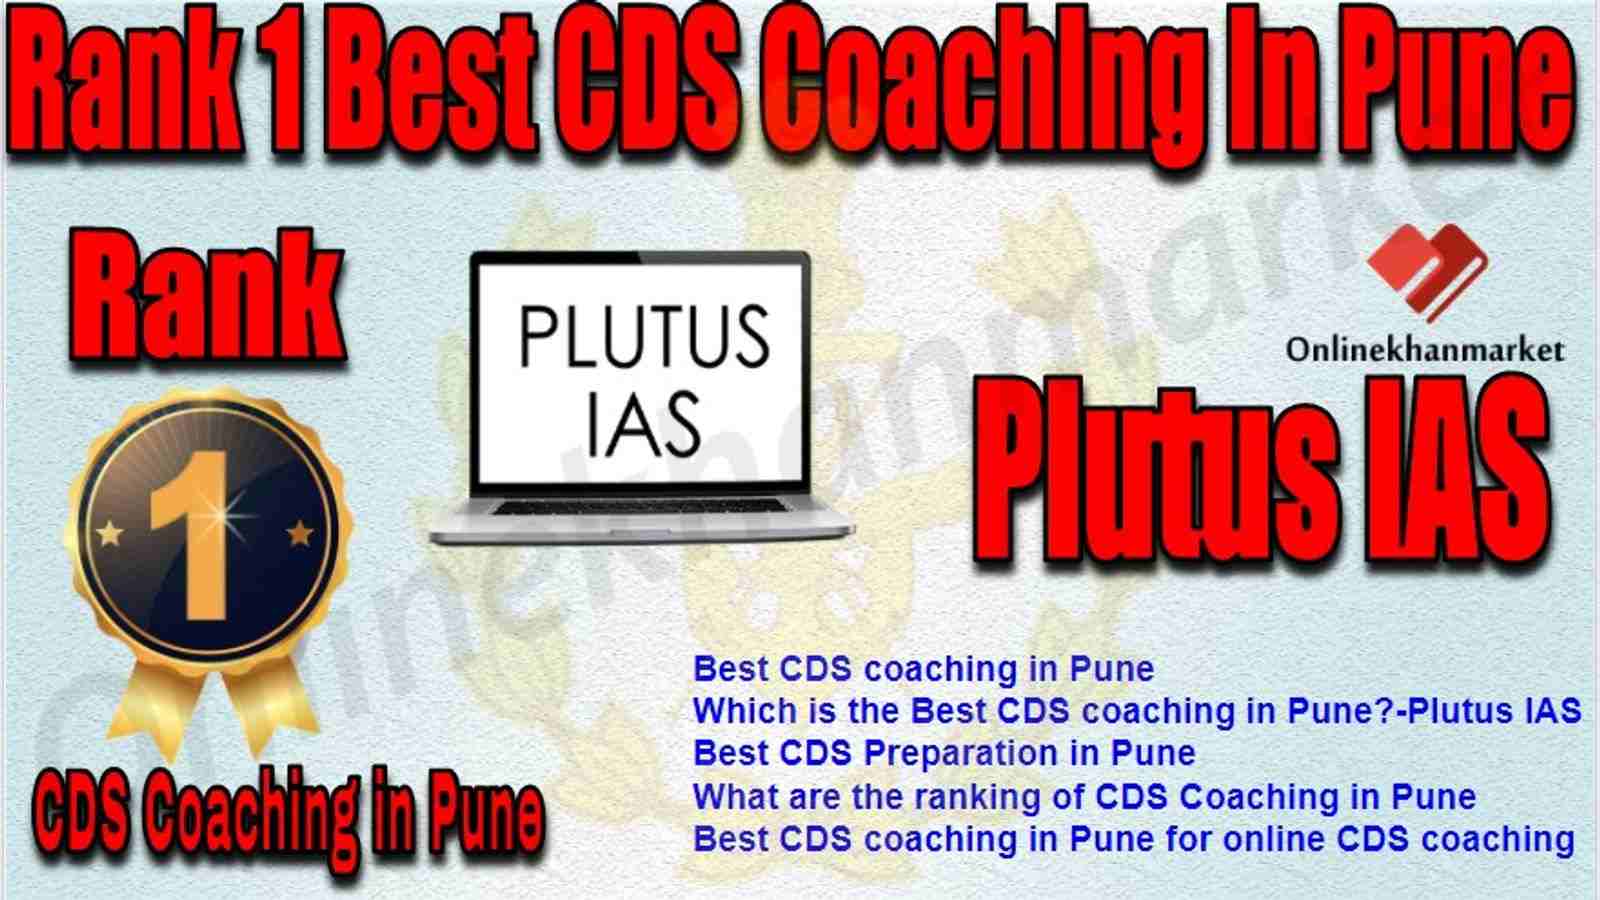 Rank 1 Best CDS Coaching in pune